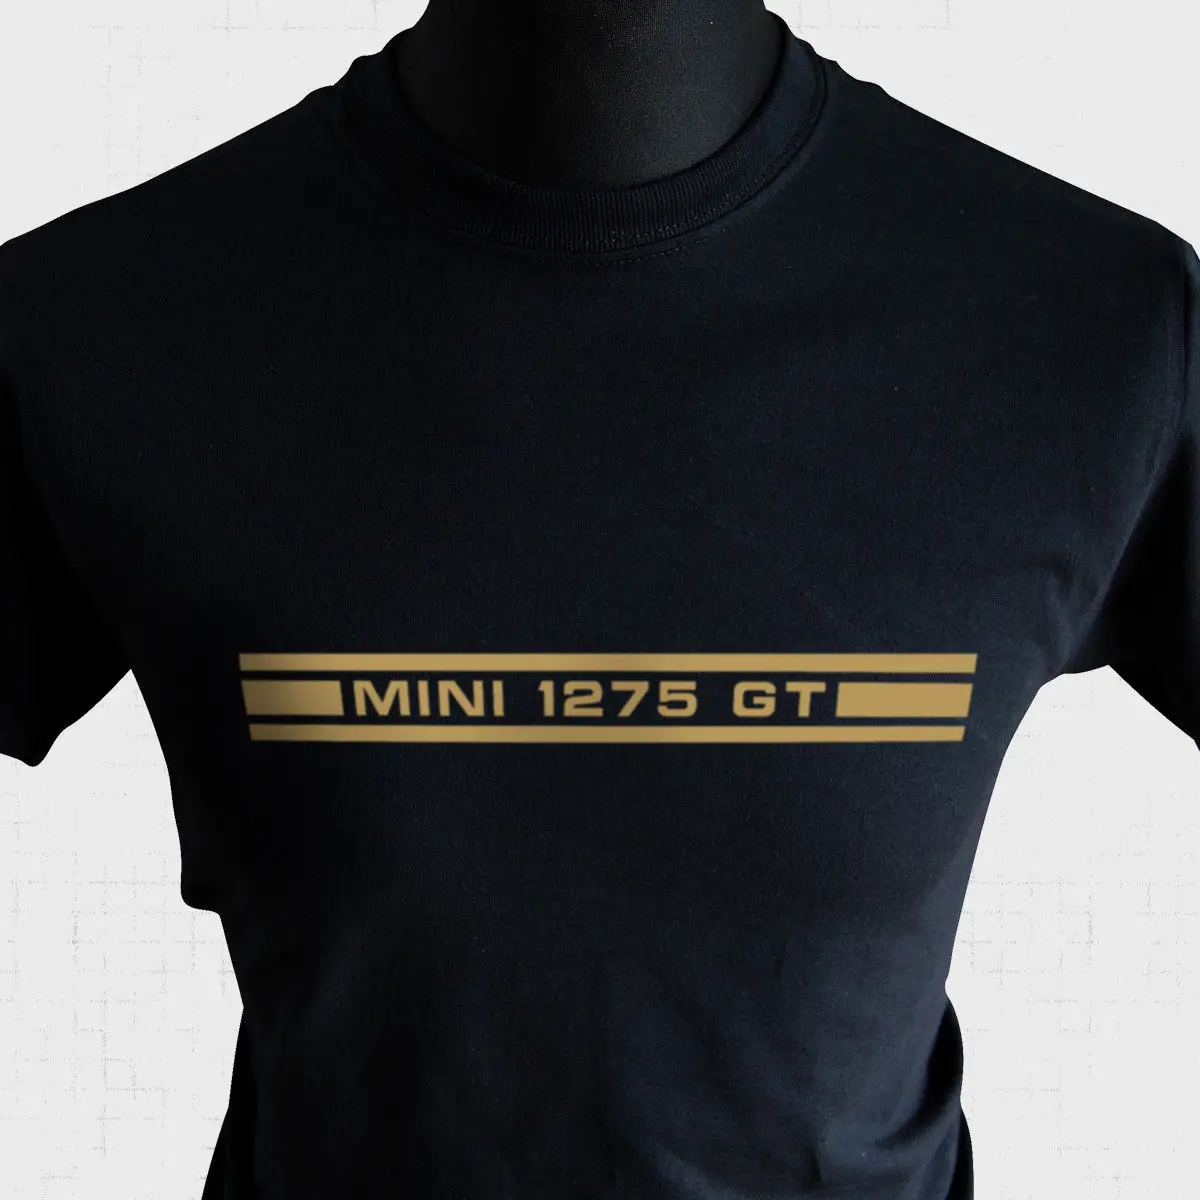 Mini 1275 Gt футболка в полоску с боковой наклейкой Ретро стиль крутой Купер Остин